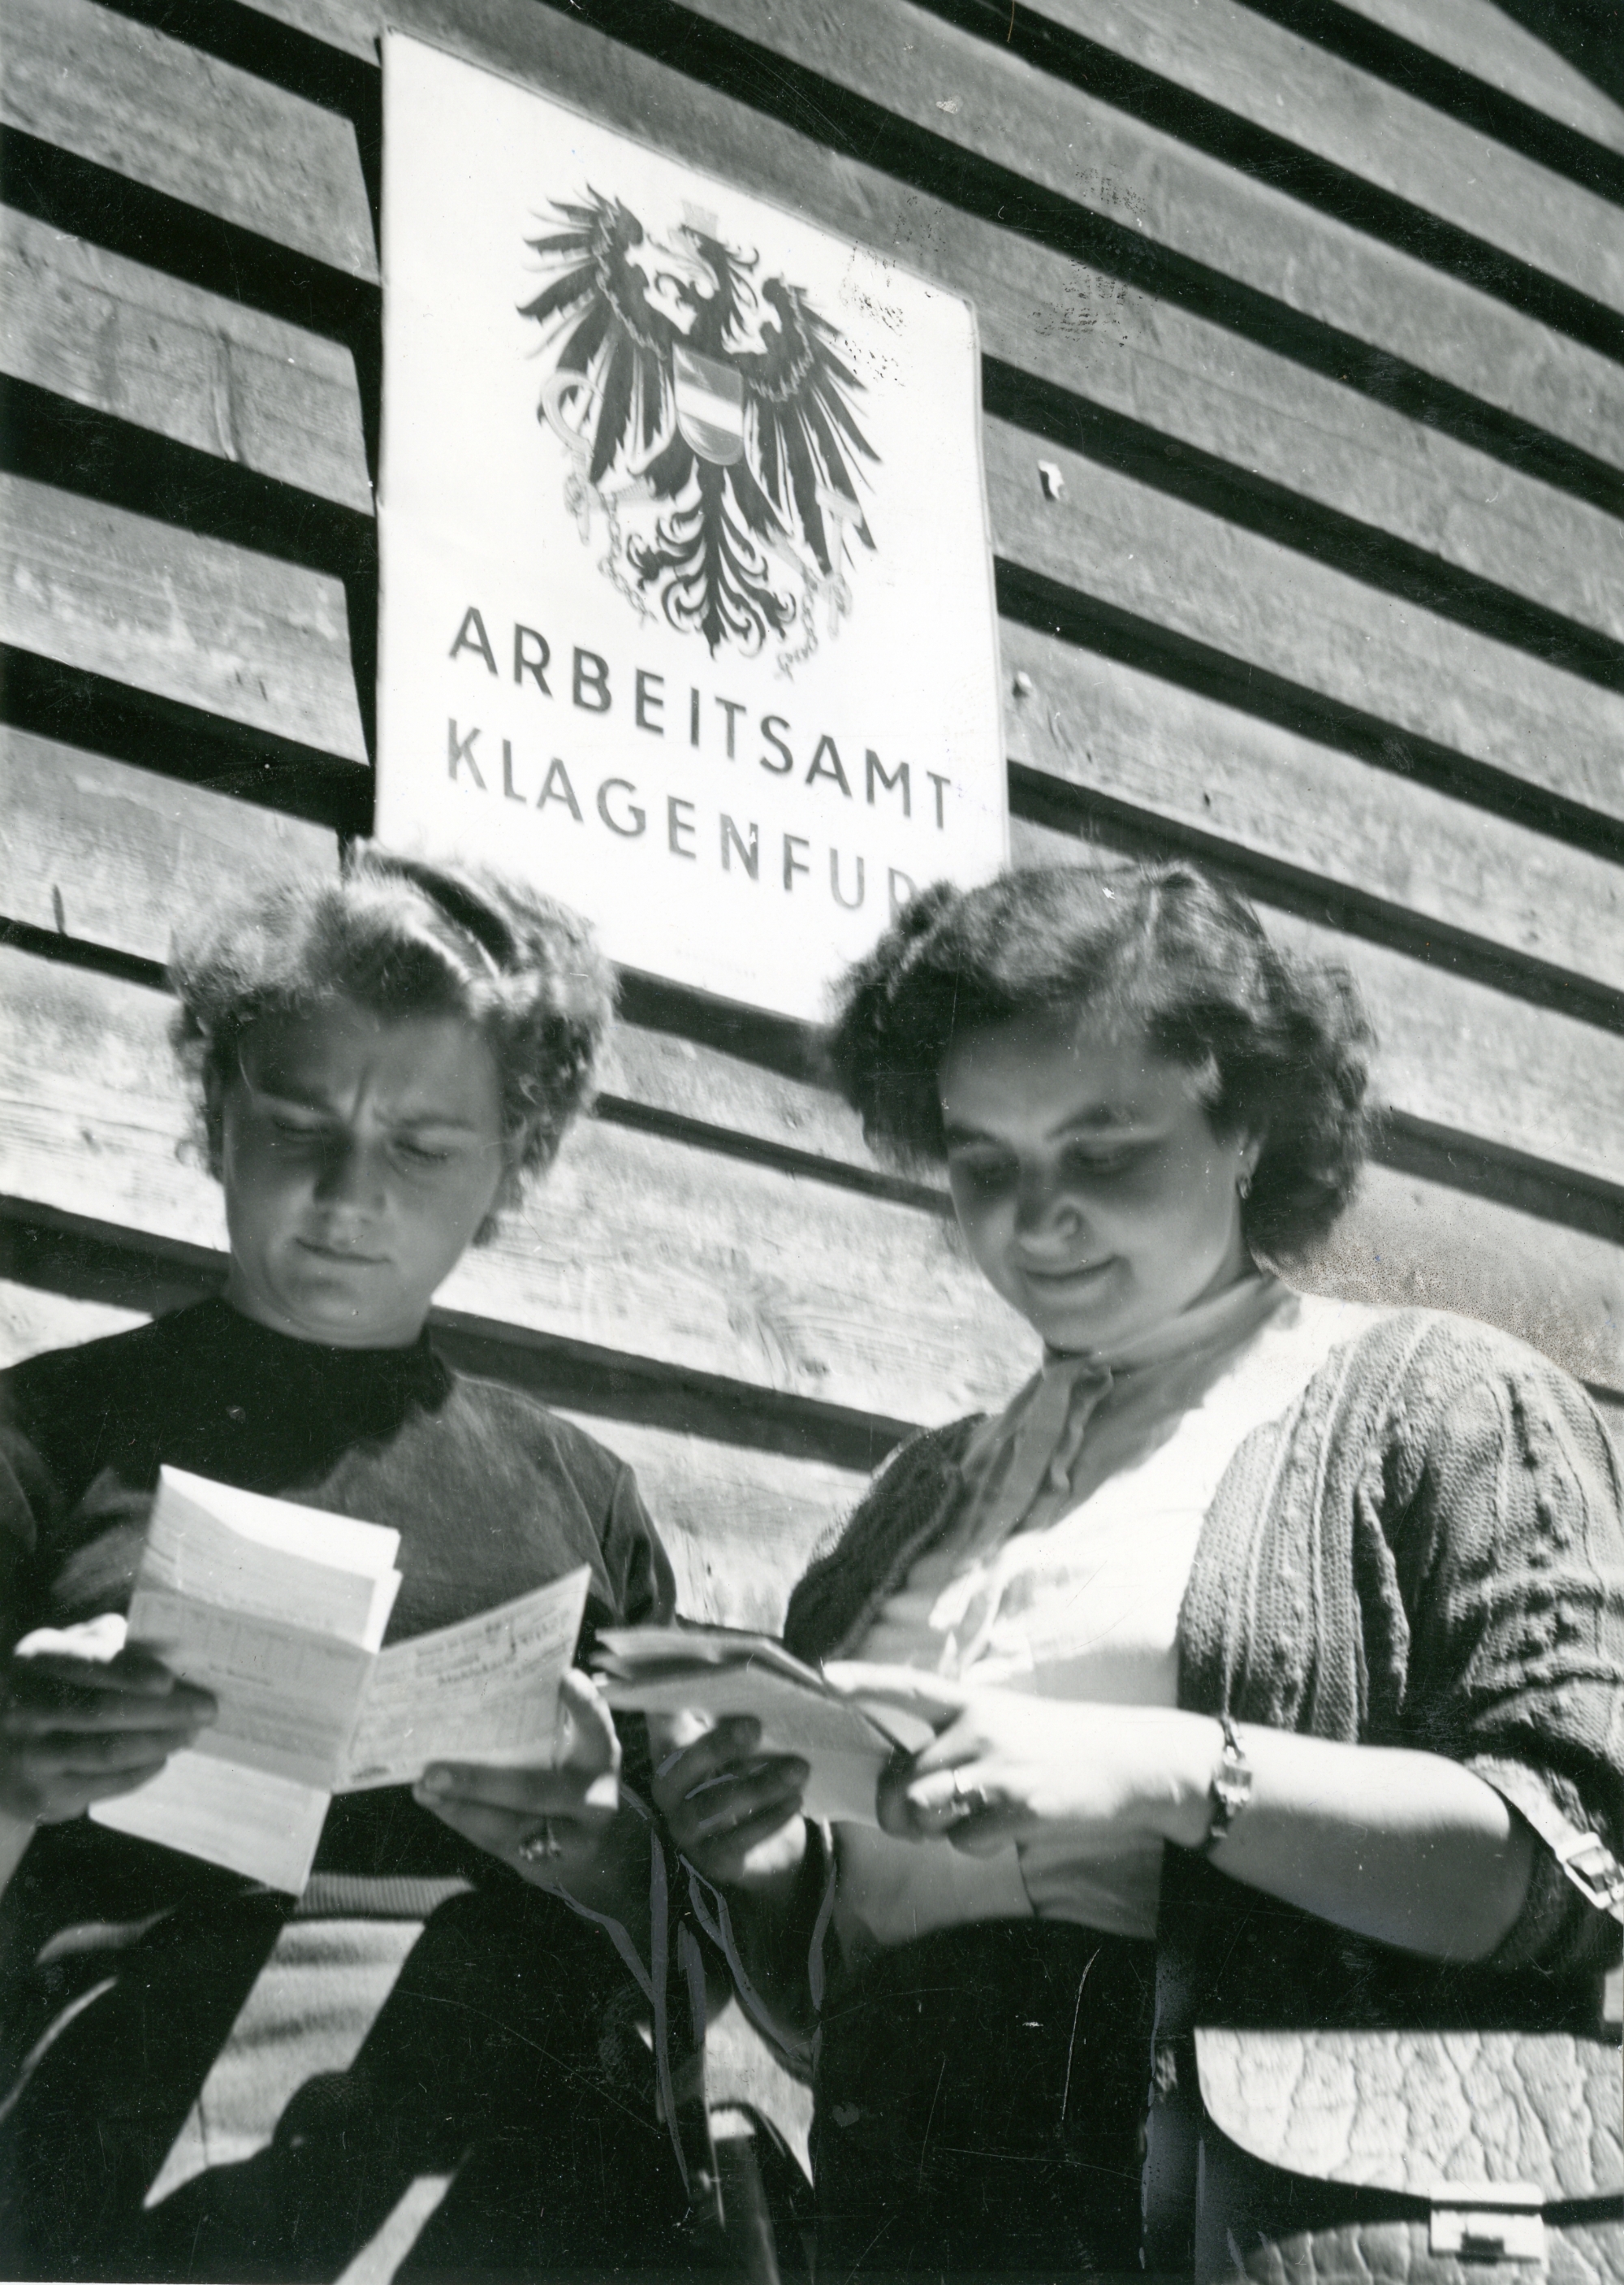 Zwei Frauen bekommen Arbeitslosengeld im Jahr 1952